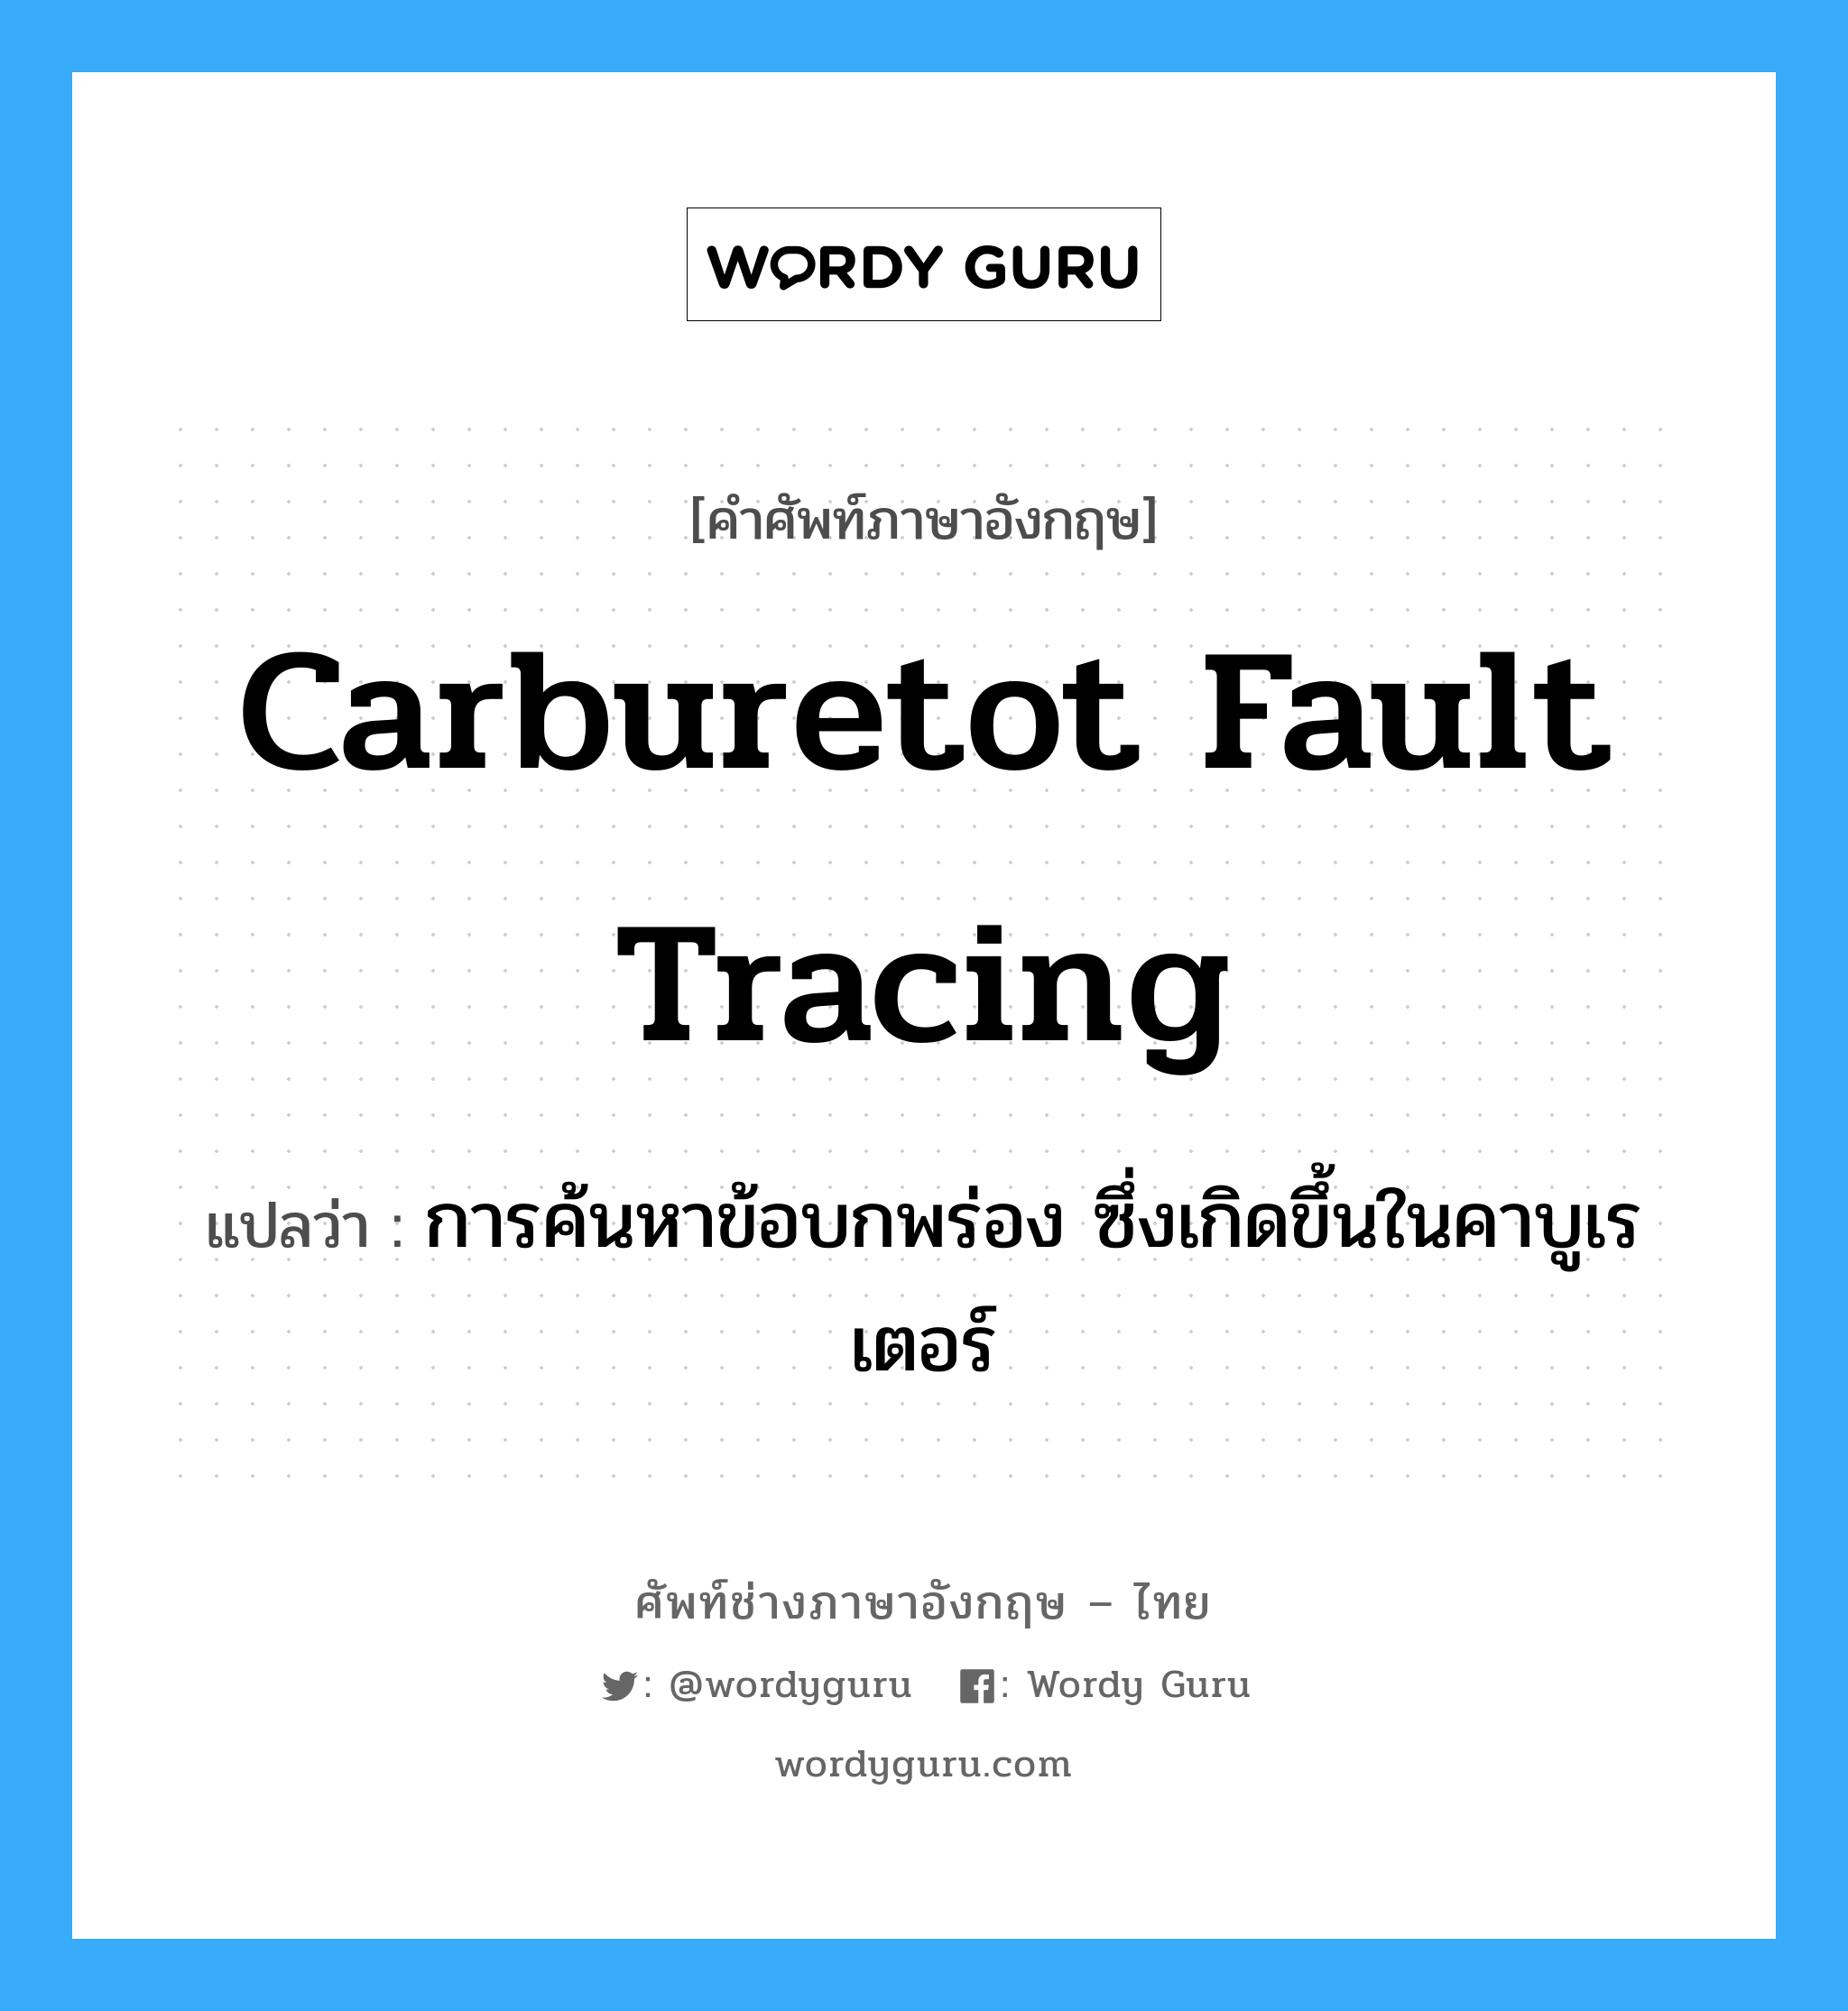 carburetot fault tracing แปลว่า?, คำศัพท์ช่างภาษาอังกฤษ - ไทย carburetot fault tracing คำศัพท์ภาษาอังกฤษ carburetot fault tracing แปลว่า การค้นหาข้อบกพร่อง ซึ่งเกิดขึ้นในคาบูเรเตอร์